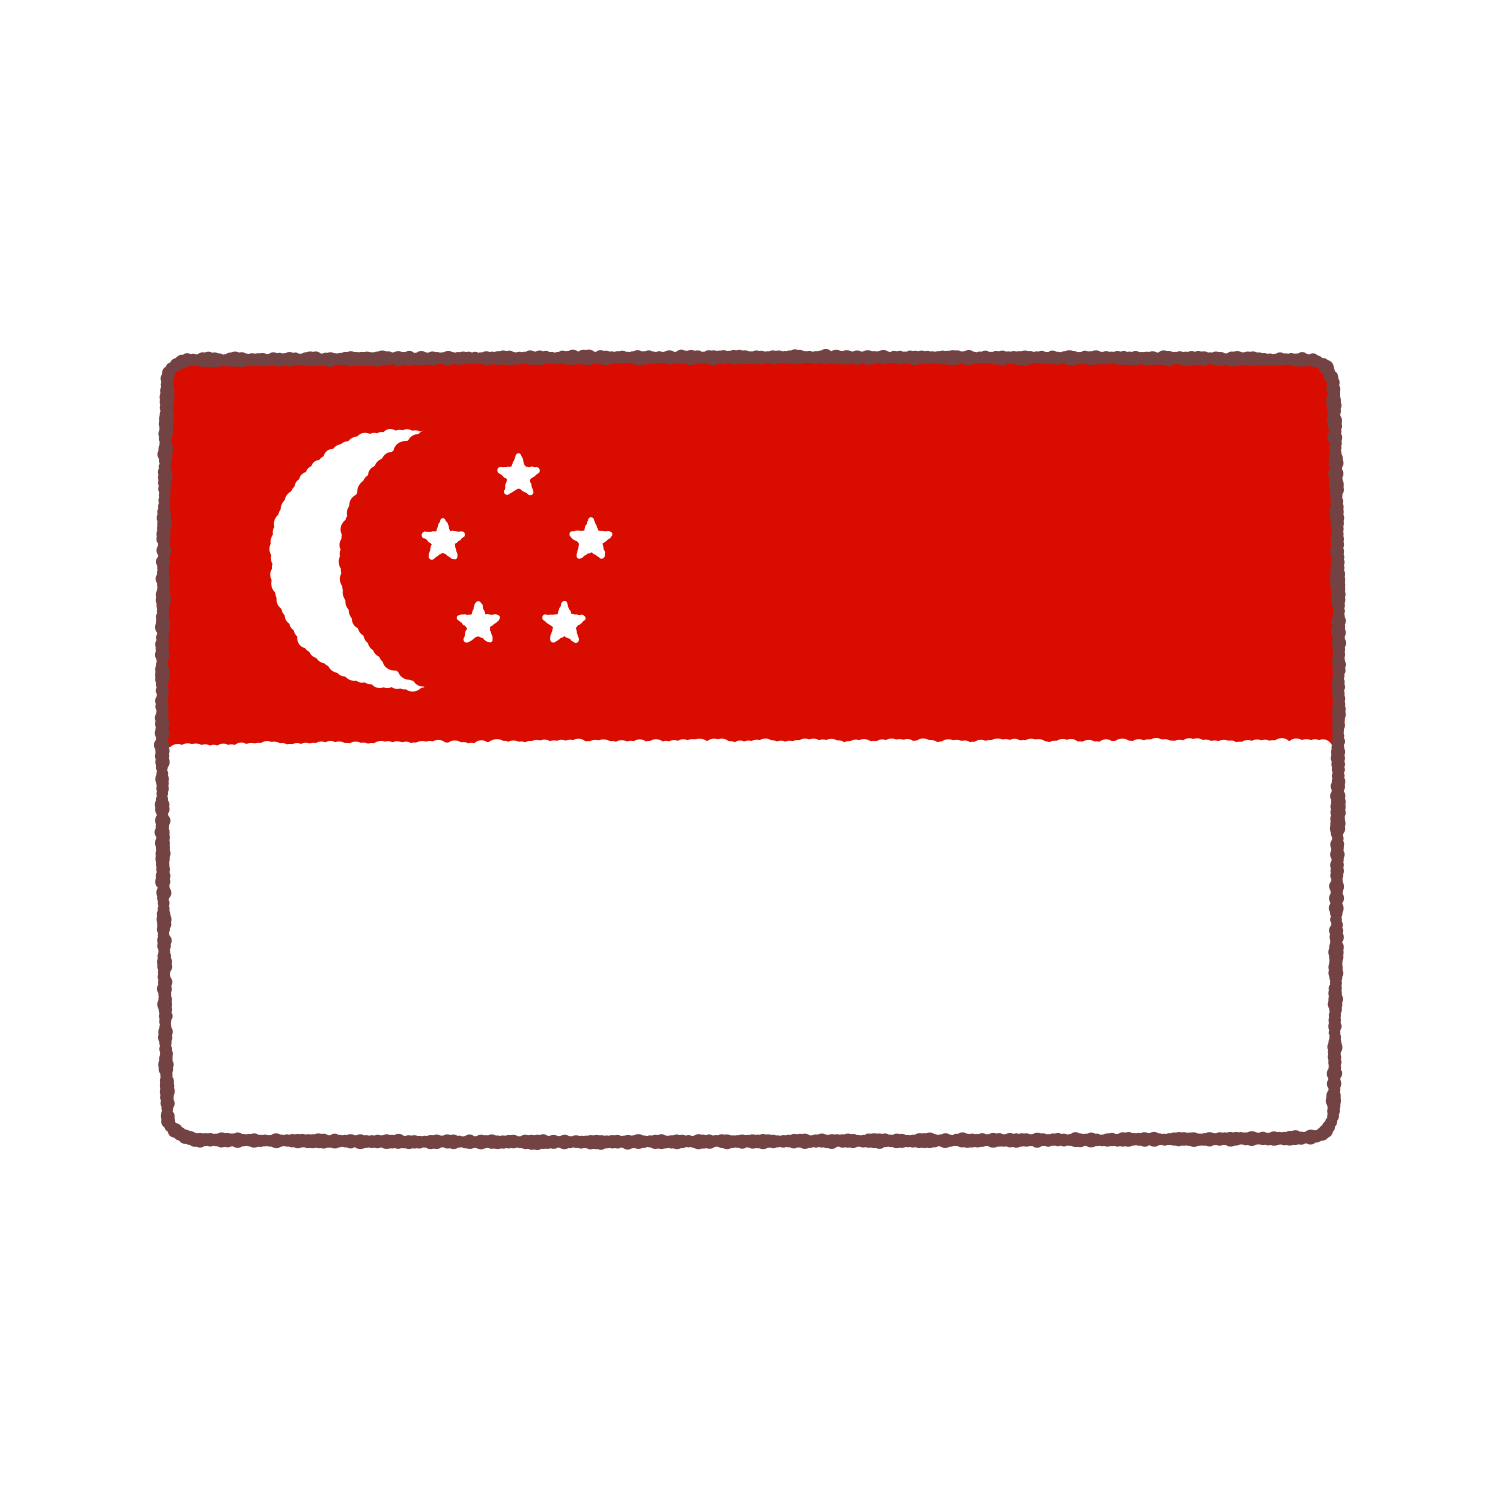 シンガポール国旗のイラスト